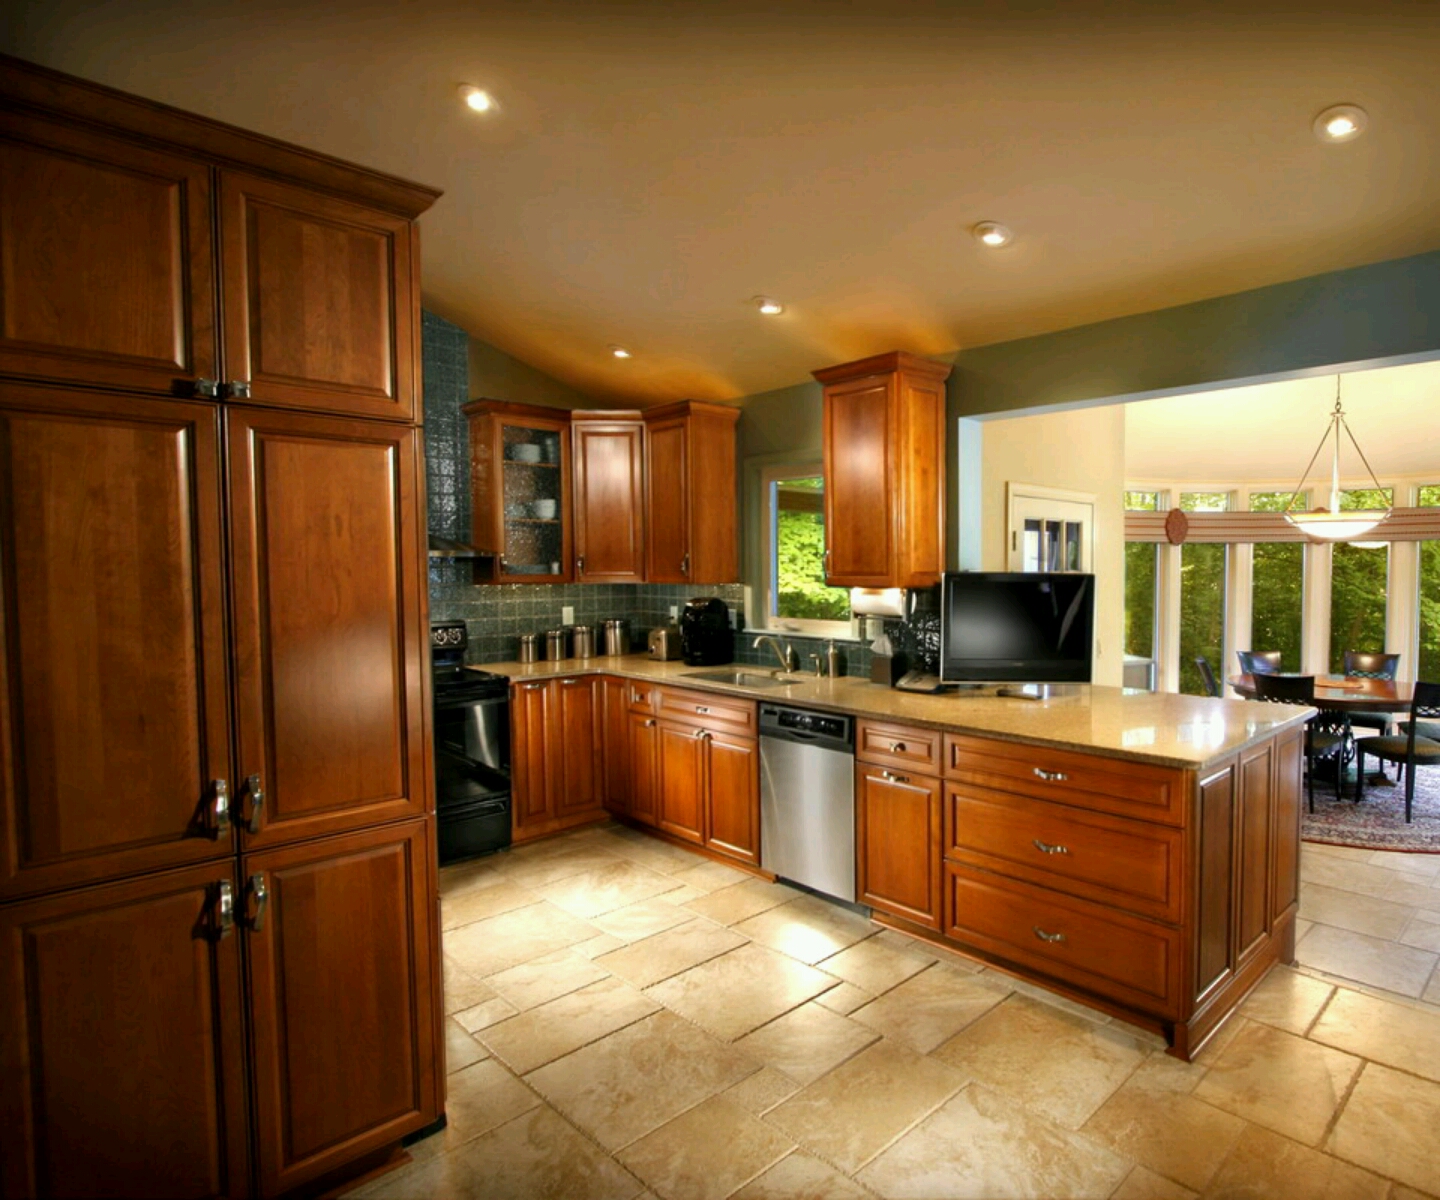 Luxury kitchen modern kitchen cabinets designs 